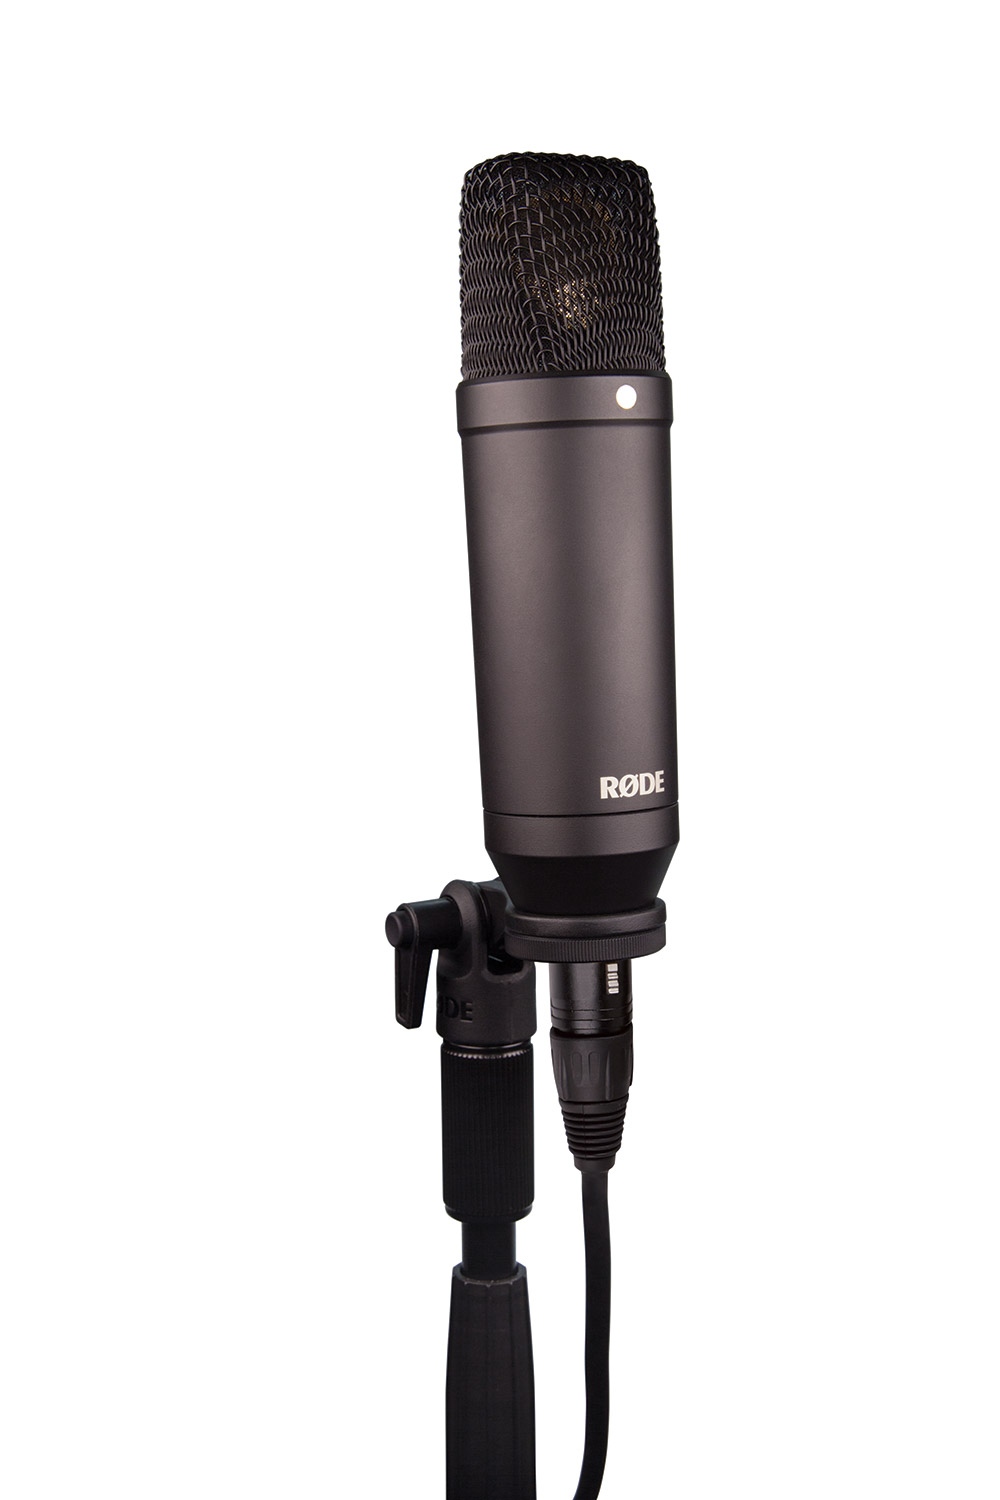 RODE NT1 комплект студийный: конденсаторный микрофон NT1,  виброзащищенное крепление на стойку с интегрированным поп-фильтром SM6